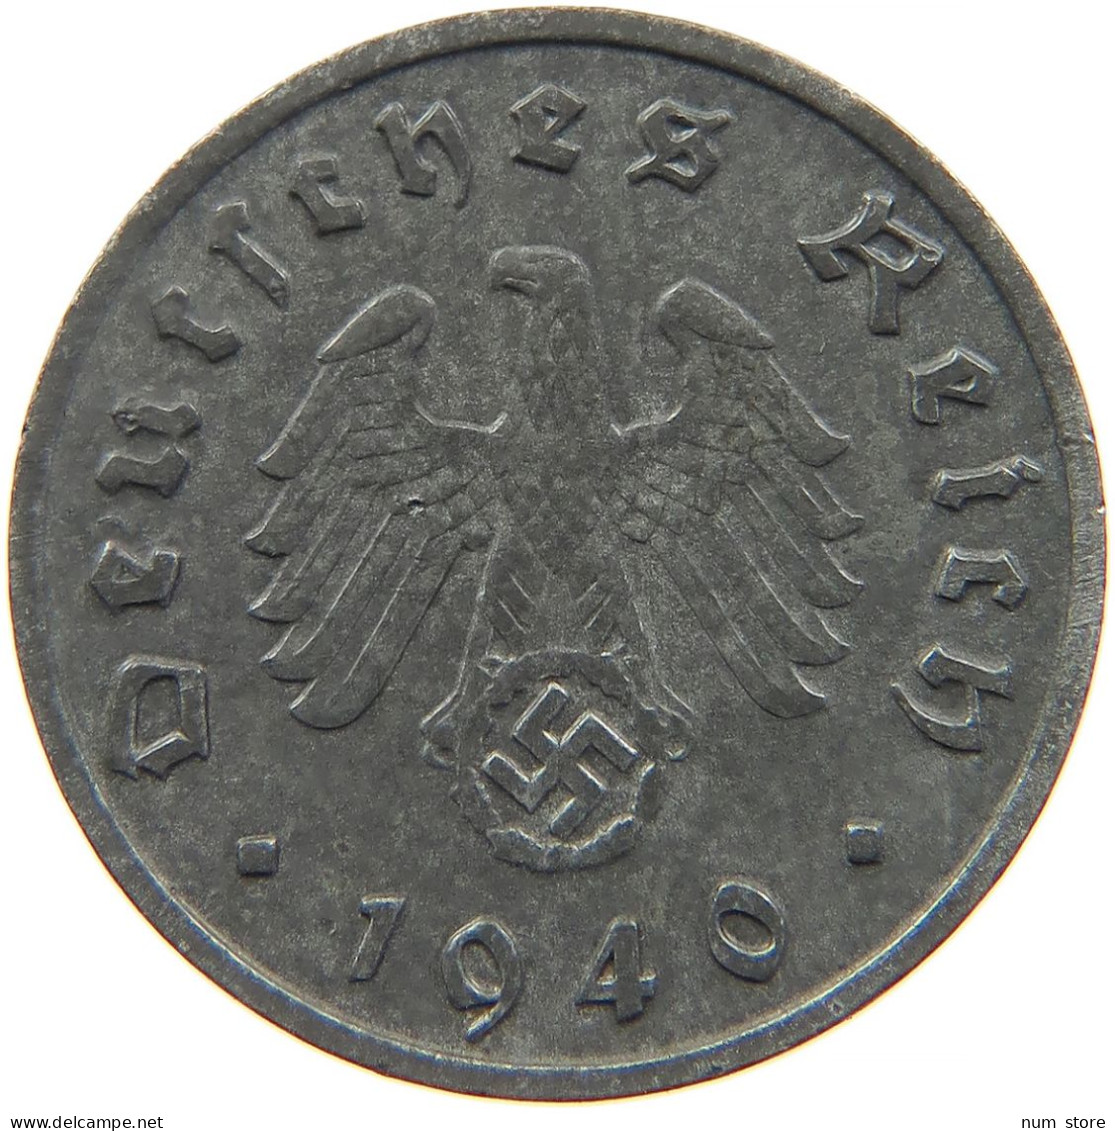 GERMANY 10 REICHSPFENNIG 1940 B #s095 0057 - 10 Reichspfennig